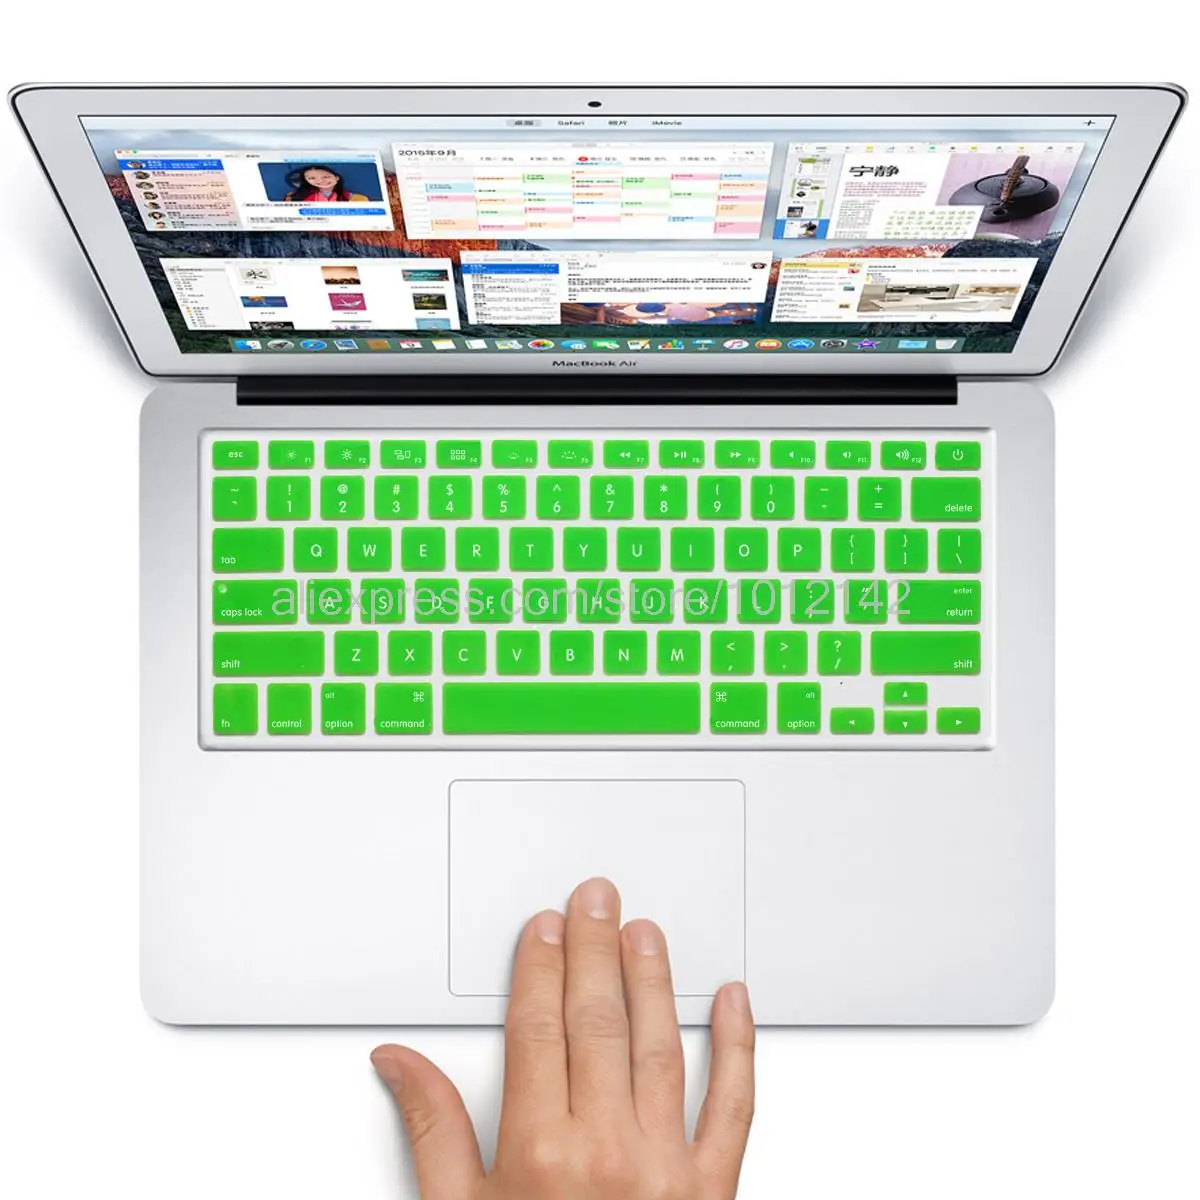 США Макет красочные силиконовые английский клавиатура кожи защита наклейка для 1" 15" 1" Mac MacBook Air pro Retina/IMAC G6